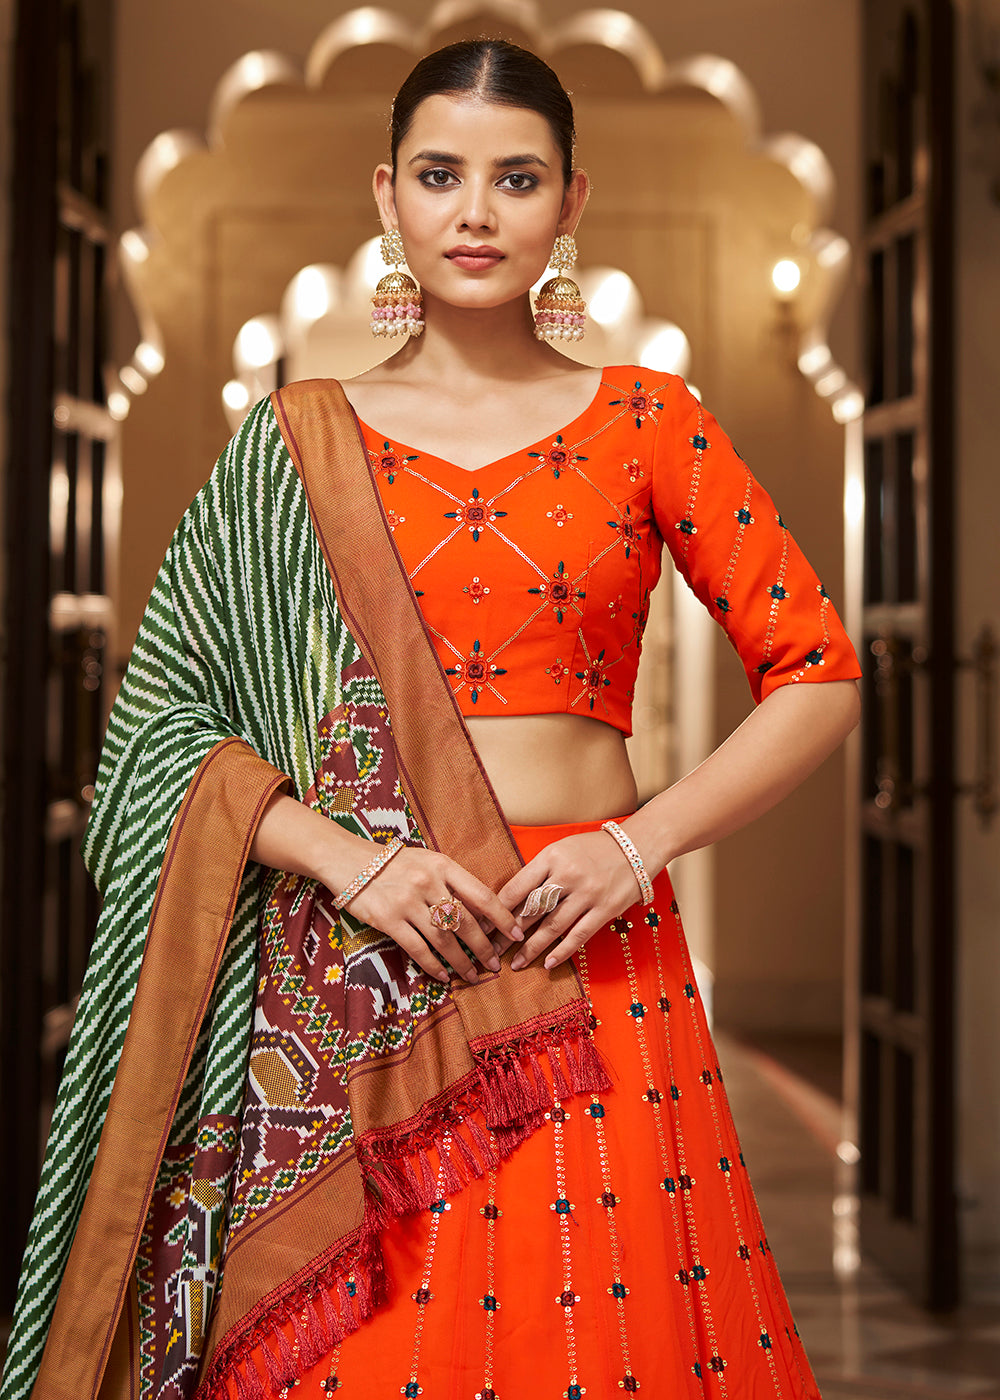 Buy Now Enchanting Sequins Bright Orange Wedding Lehenga Choli Online in USA, UK, Canada & Worldwide at Empress Clothing. 